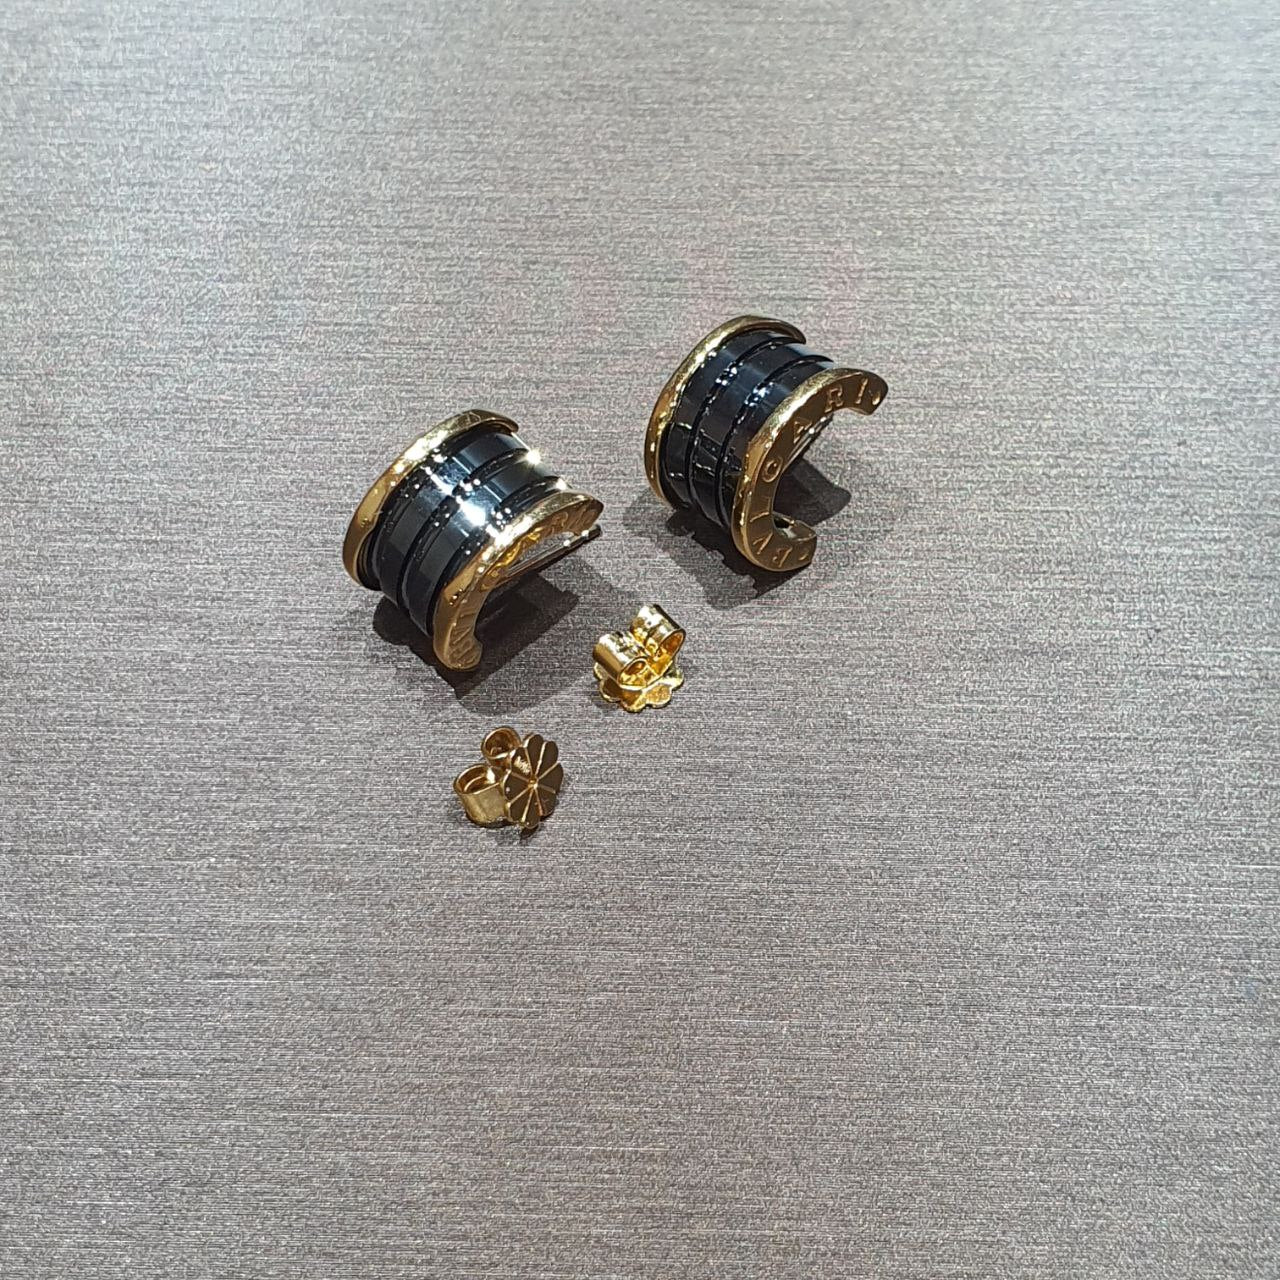 22k / 916 Gold B Design Earring-Earrings-Best Gold Shop